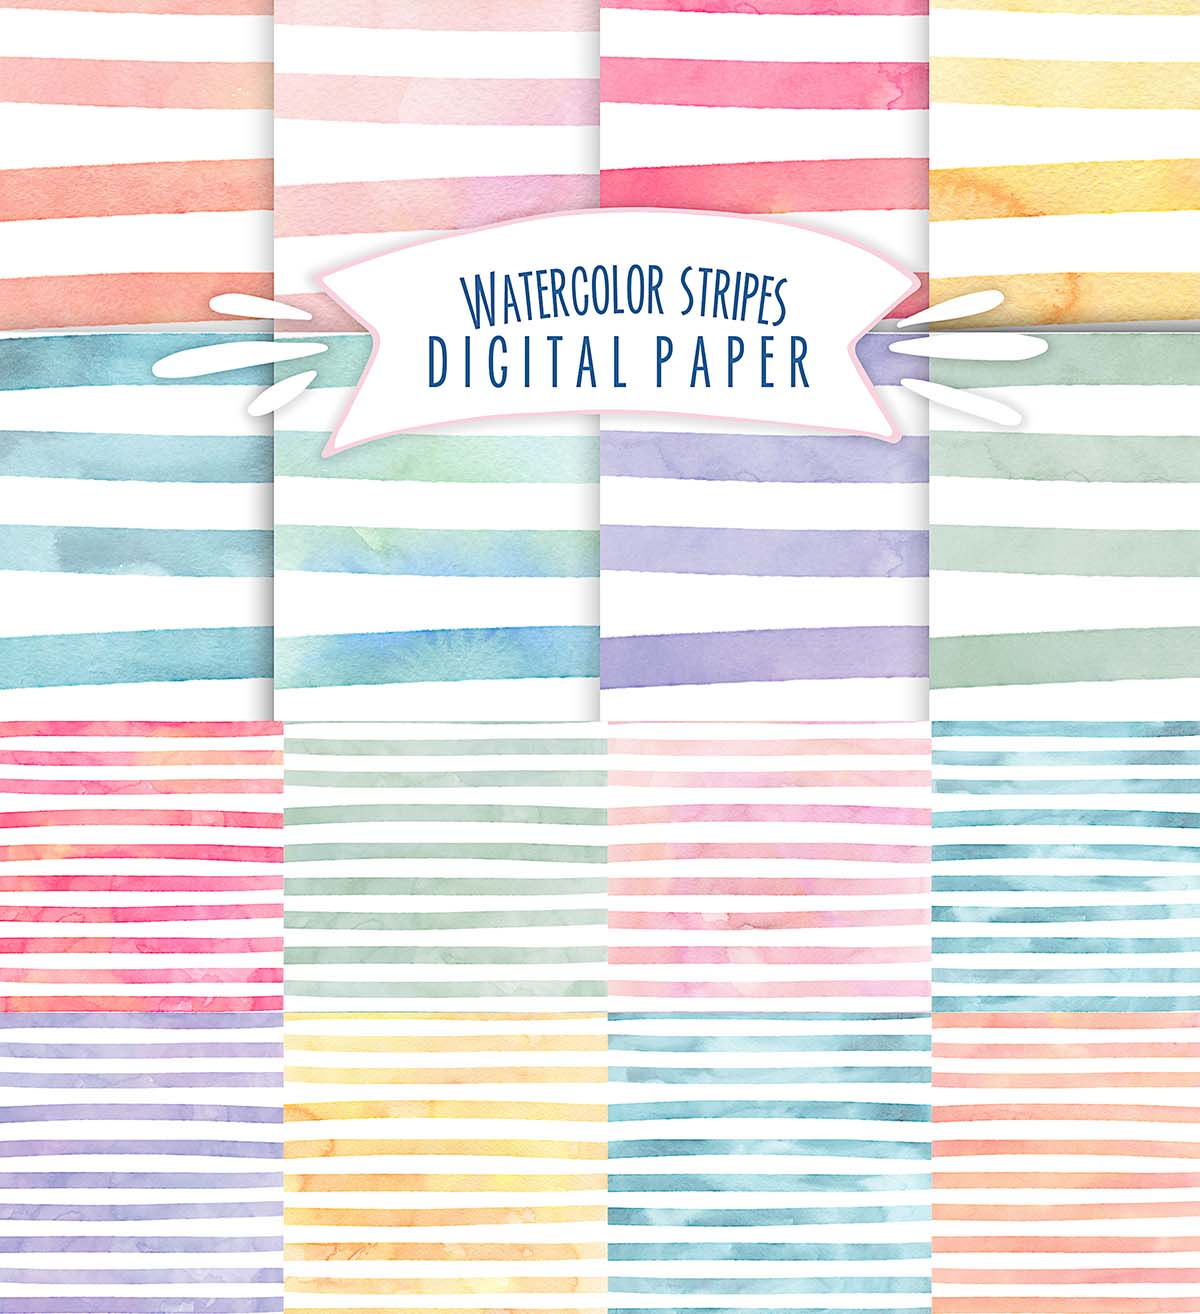 Watercolor stripes pattern set